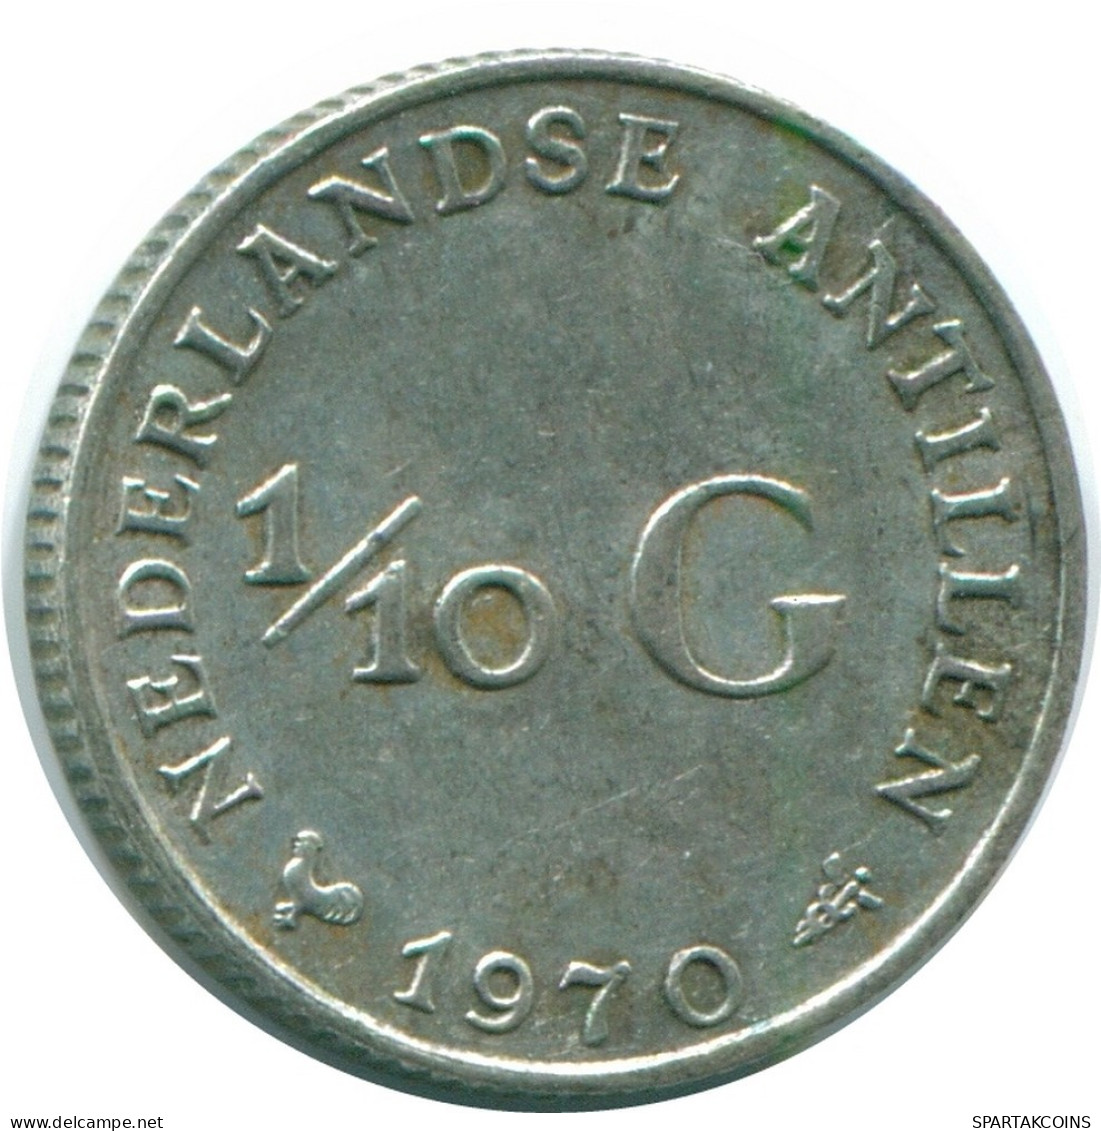 1/10 GULDEN 1970 NIEDERLÄNDISCHE ANTILLEN SILBER Koloniale Münze #NL13022.3.D.A - Nederlandse Antillen